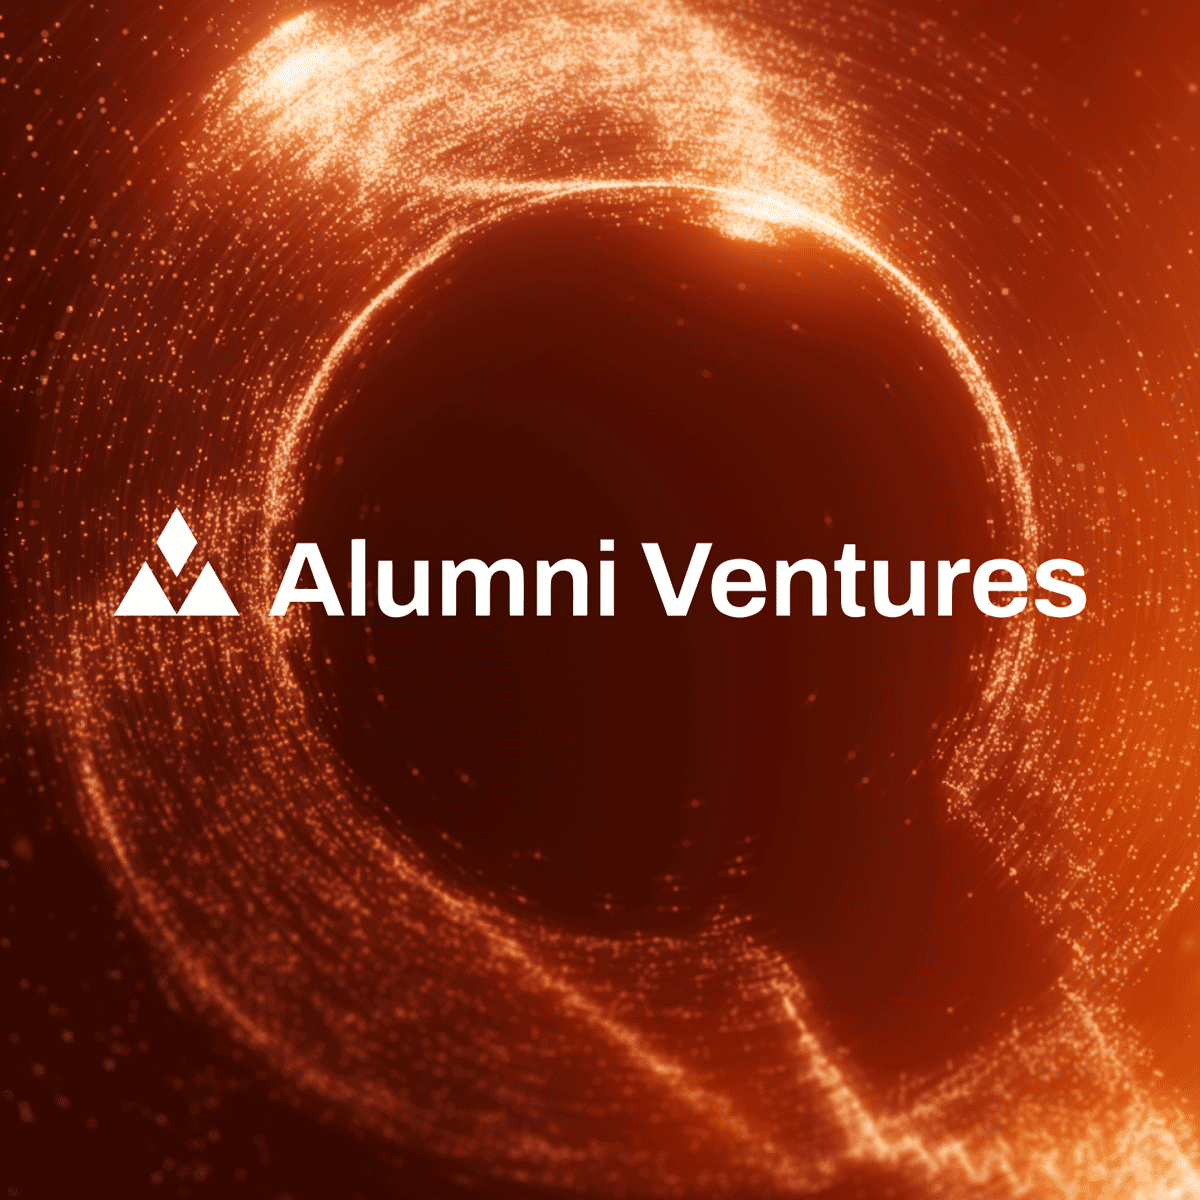 Quai Network Raises $2 Million From Alumni Ventures